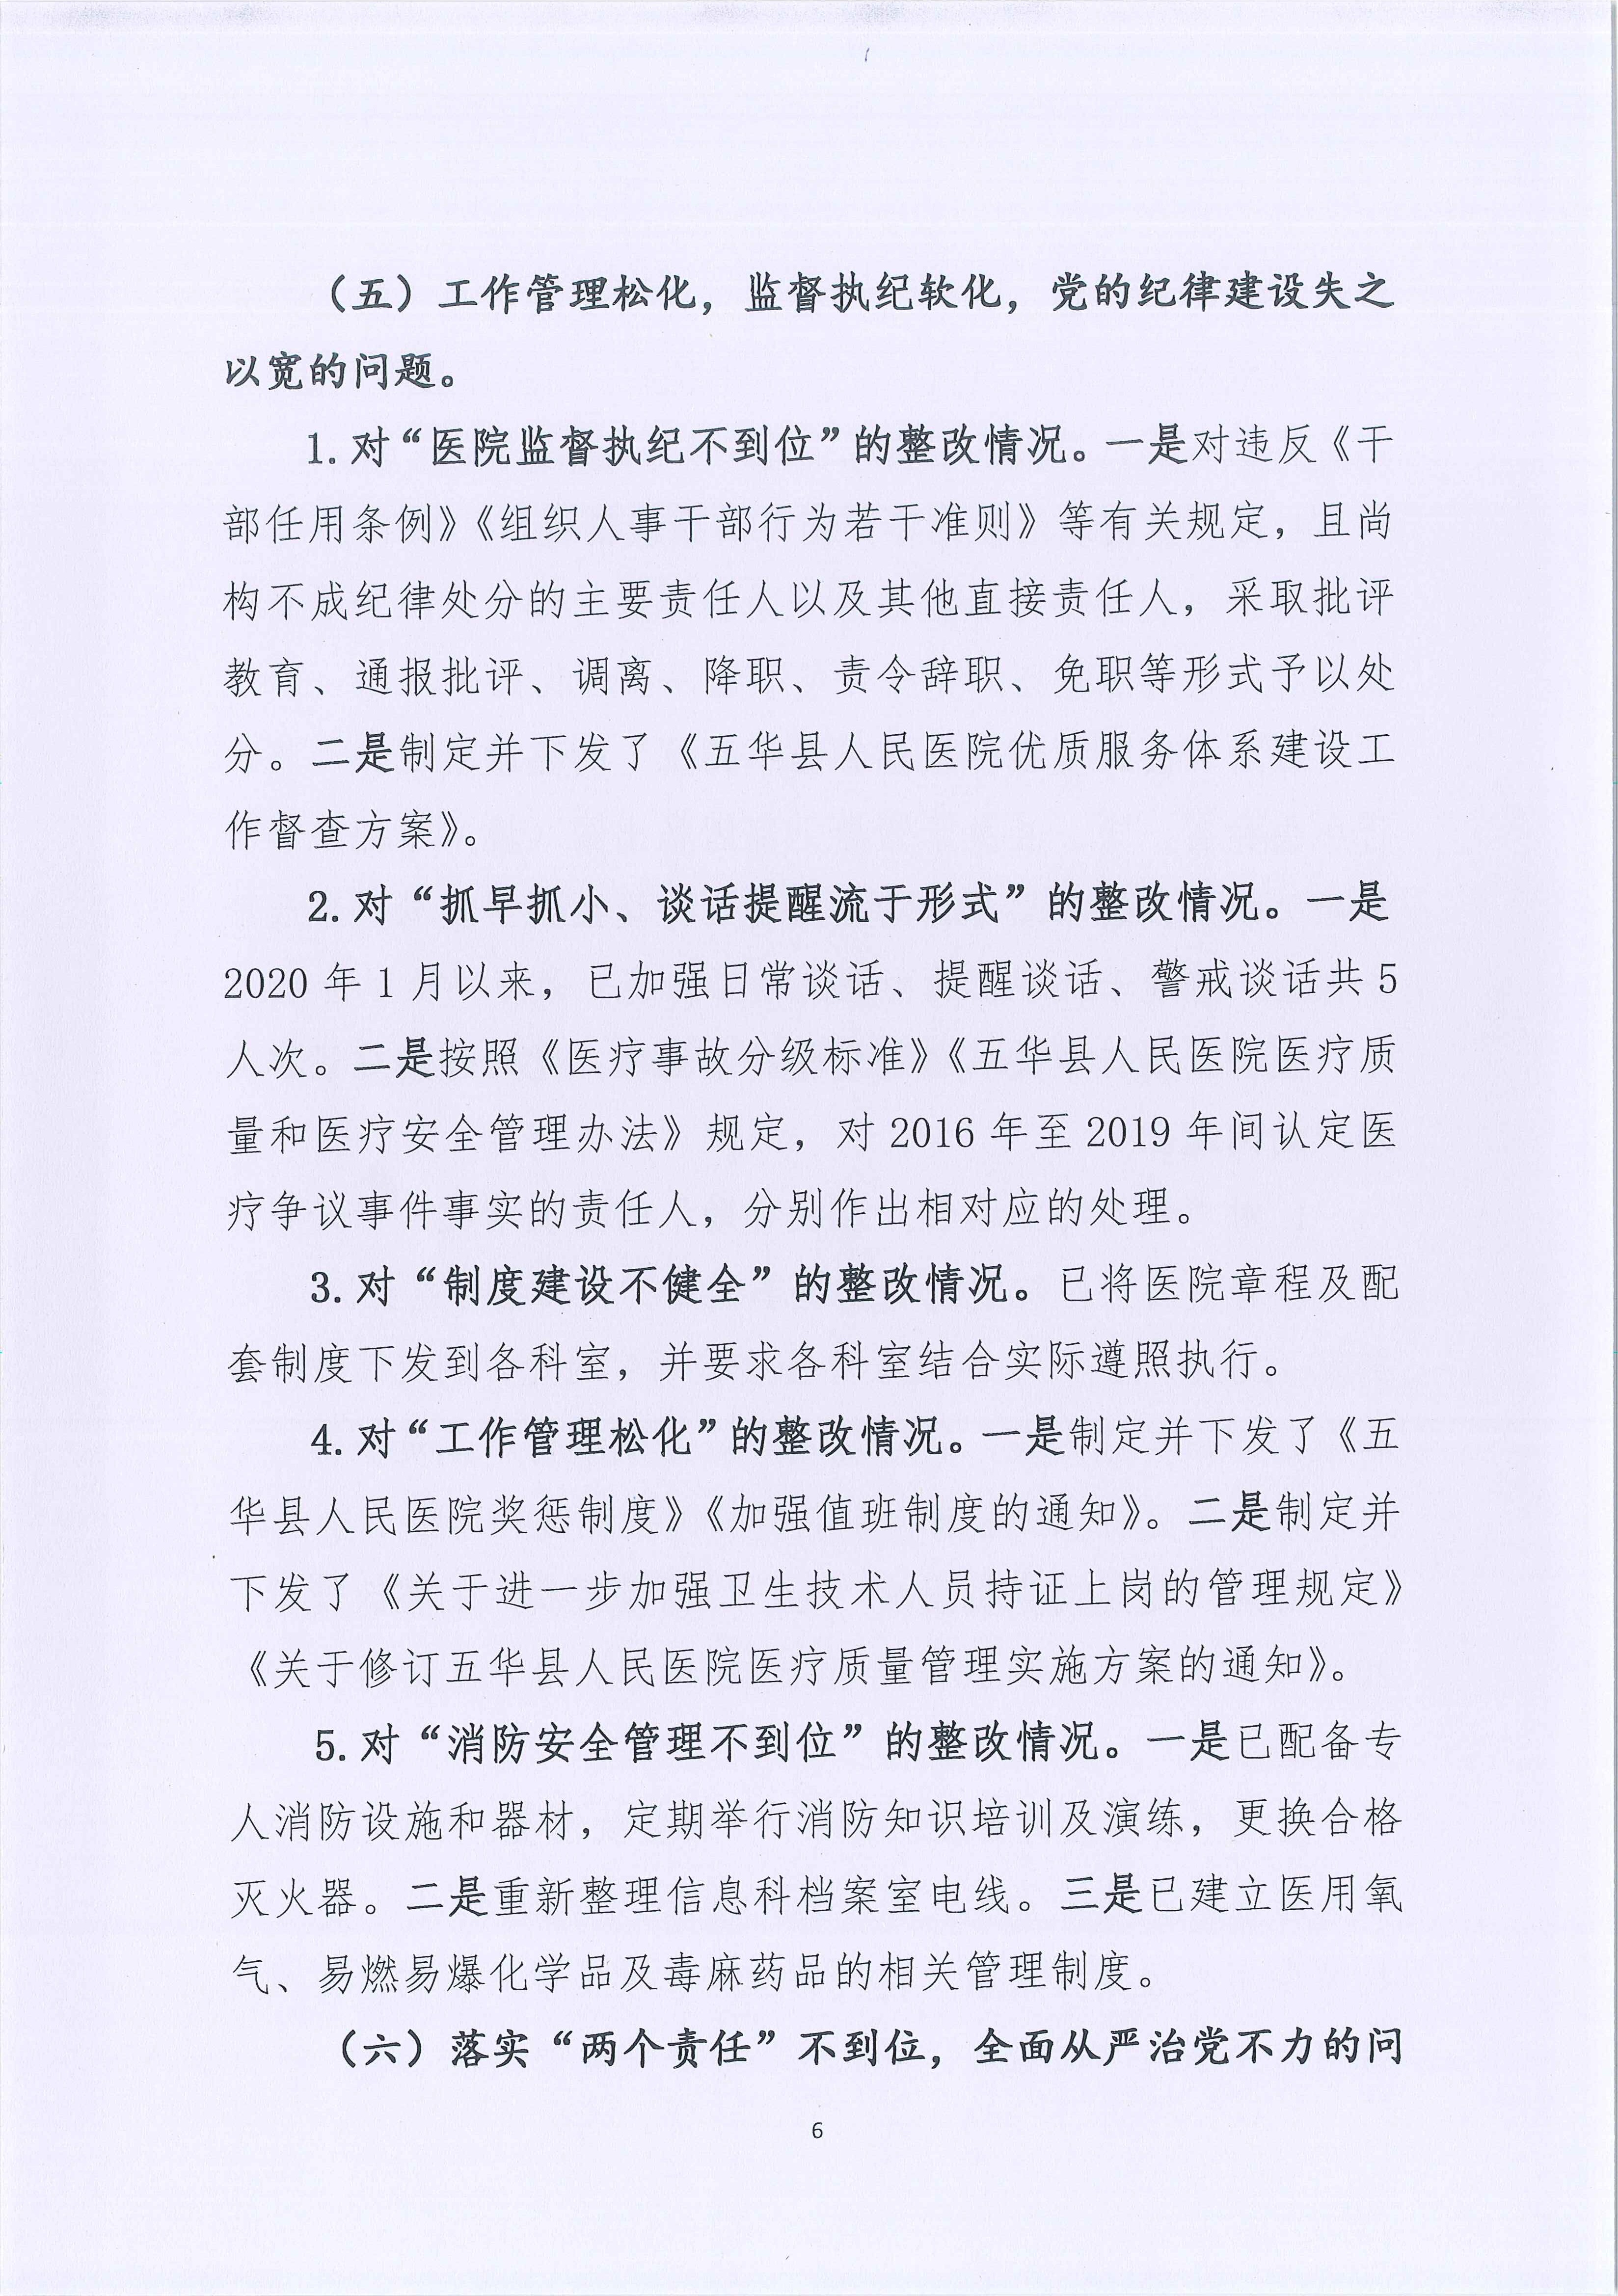 五华县人民医院关于巡察整改进展情况的通报_6